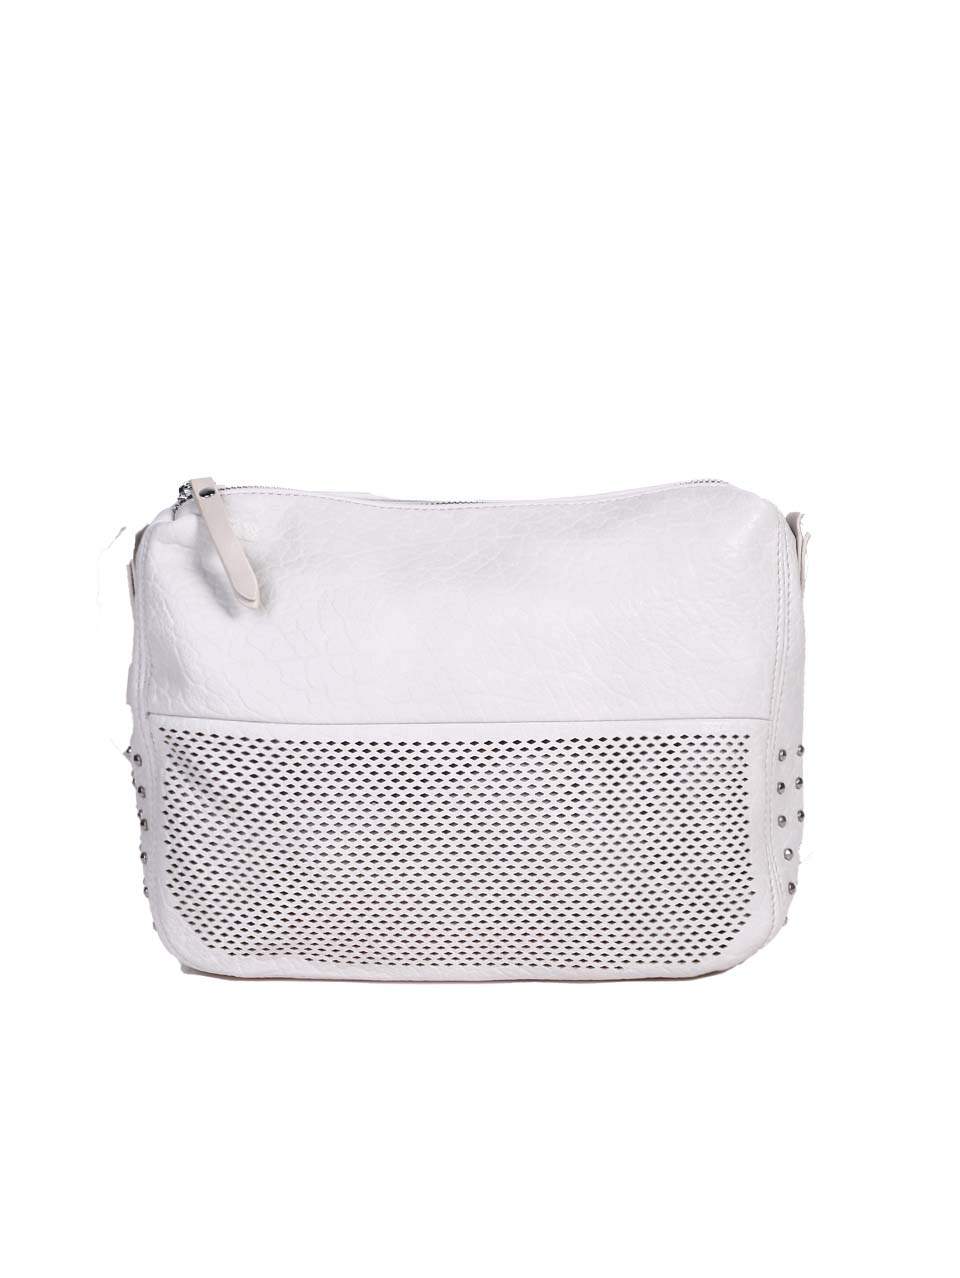 Ежедневна дамска чанта в бял/сив цвят 9Q-24291 оff white